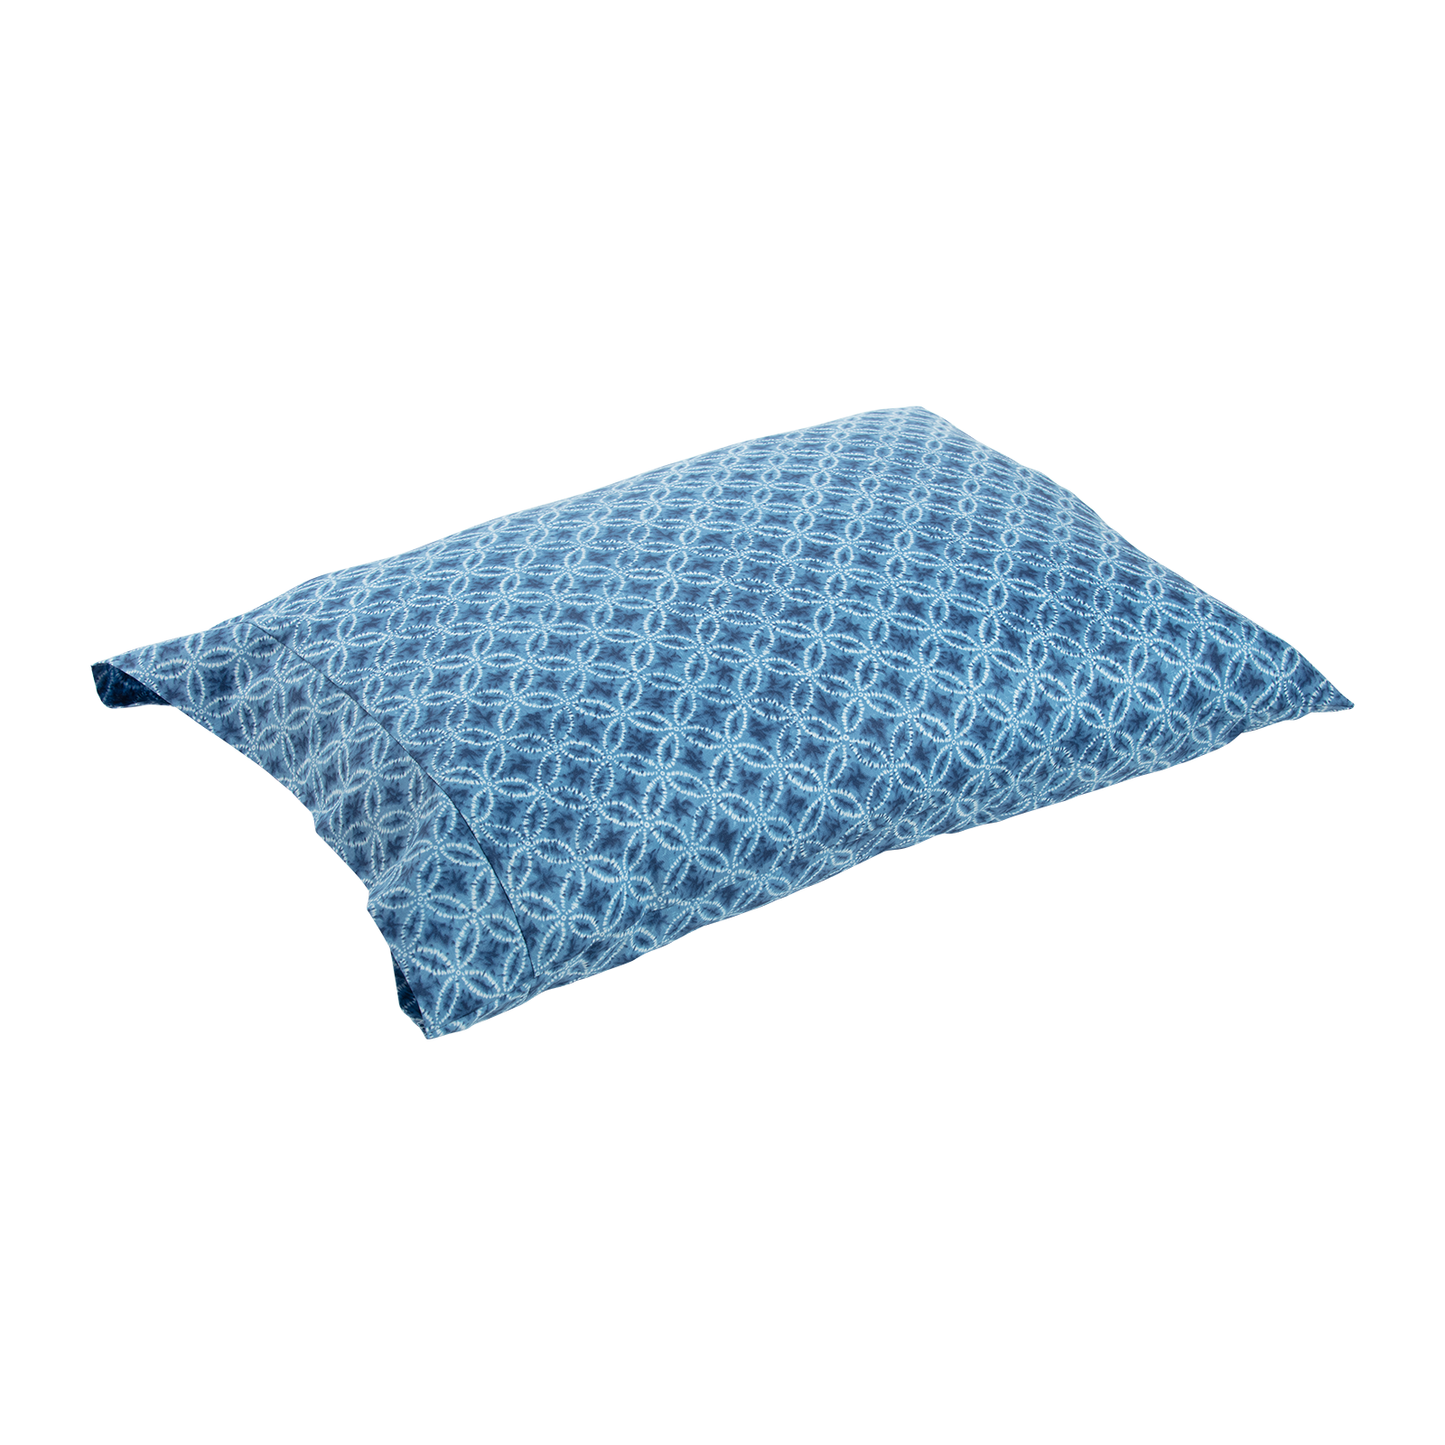 J-Life Taidai Blue Pillowcase